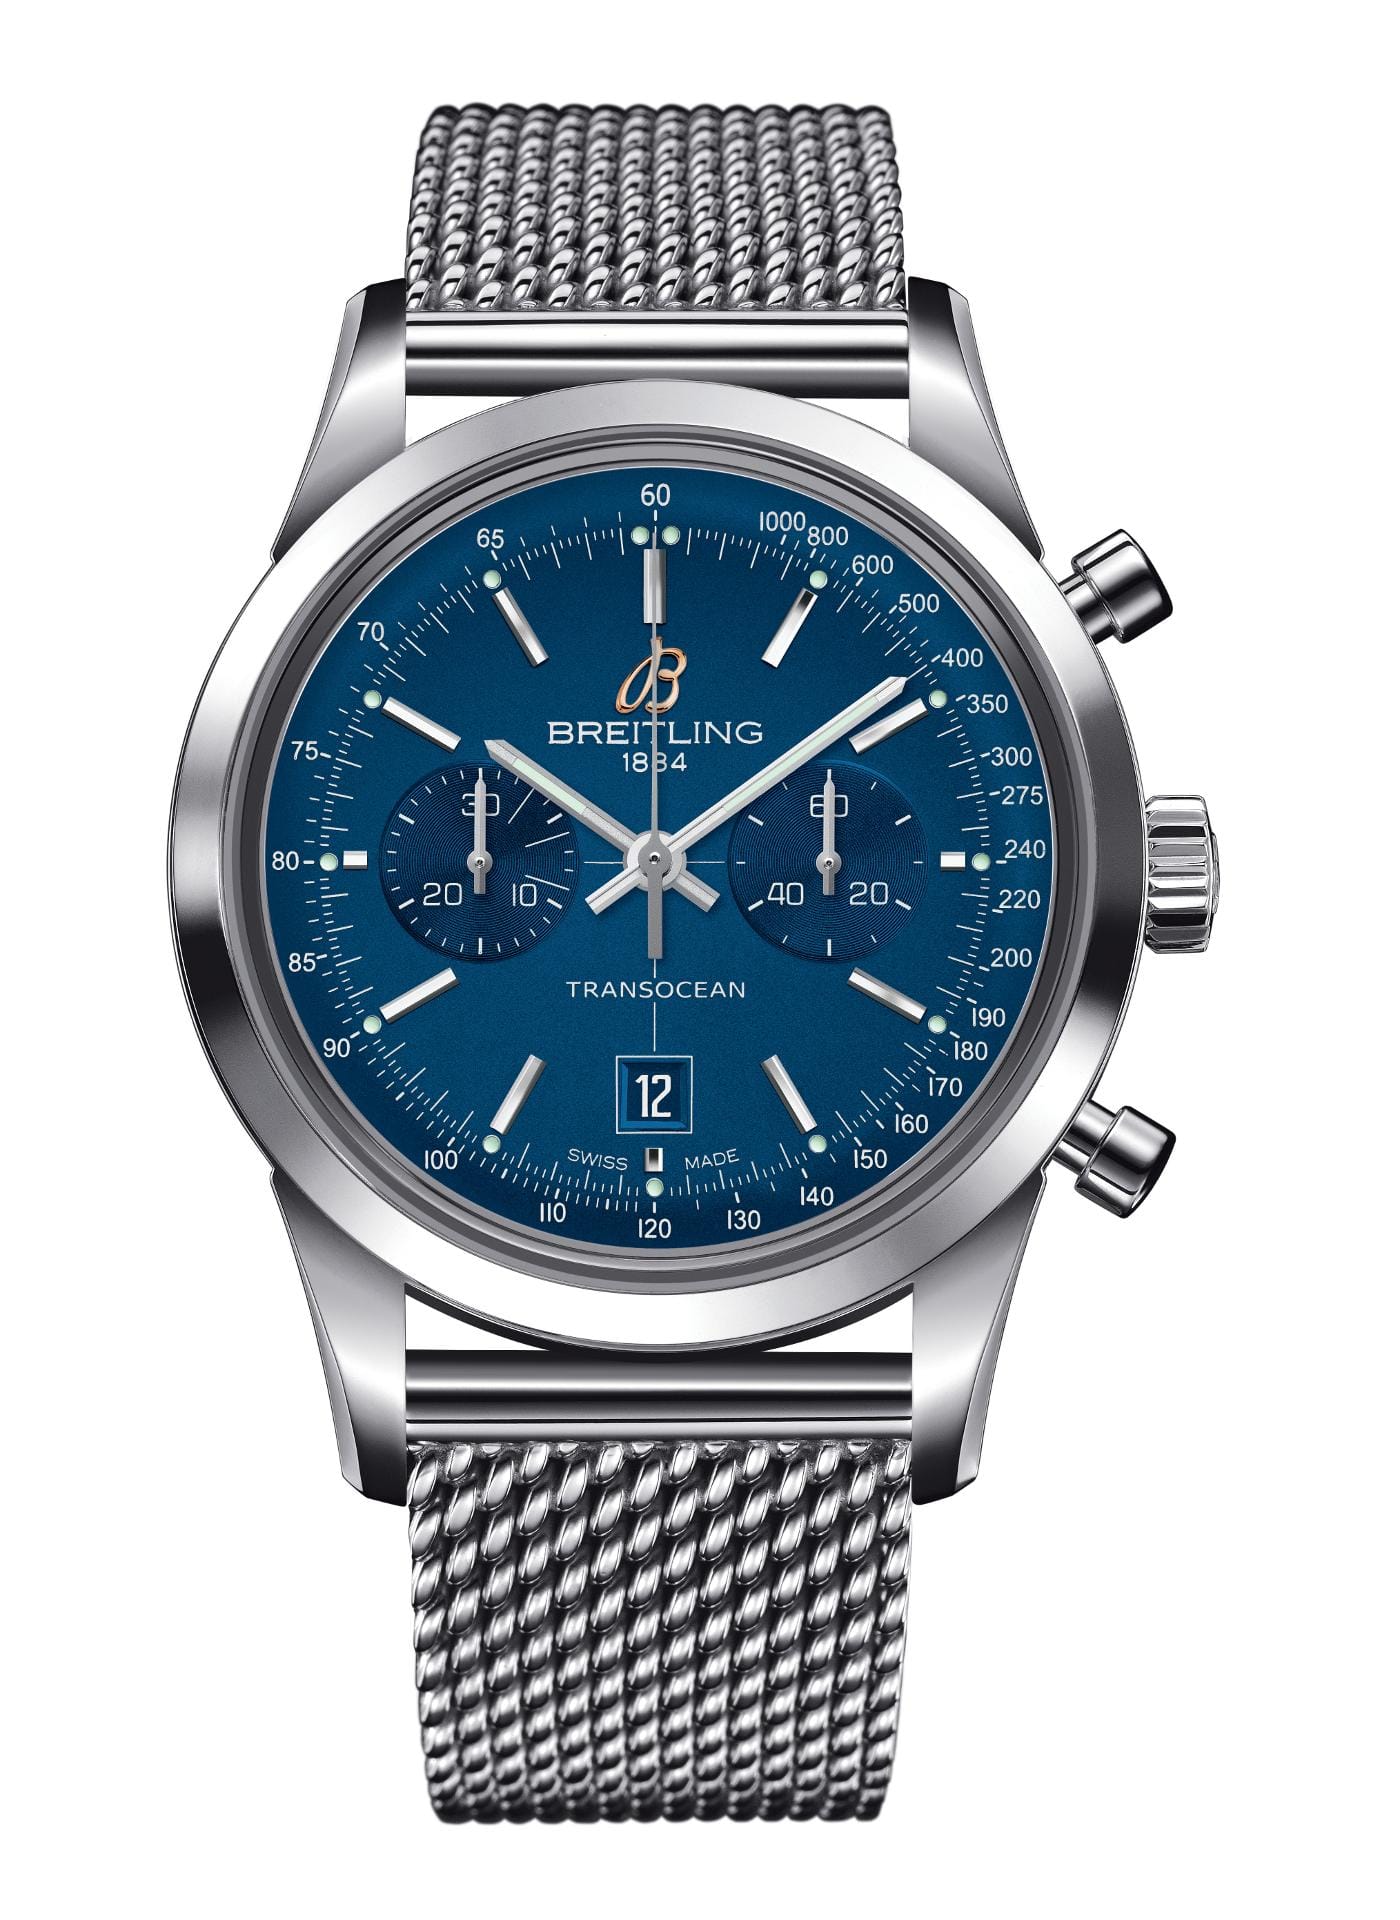 Auch der Schweizer Hersteller Breitling darf in unserer Liste mit empfehlenswerten blauen Uhren nicht fehlen. Das Modell Breitling Transocean Chronograph 38 mit Großdatum kostet 5710 Euro.